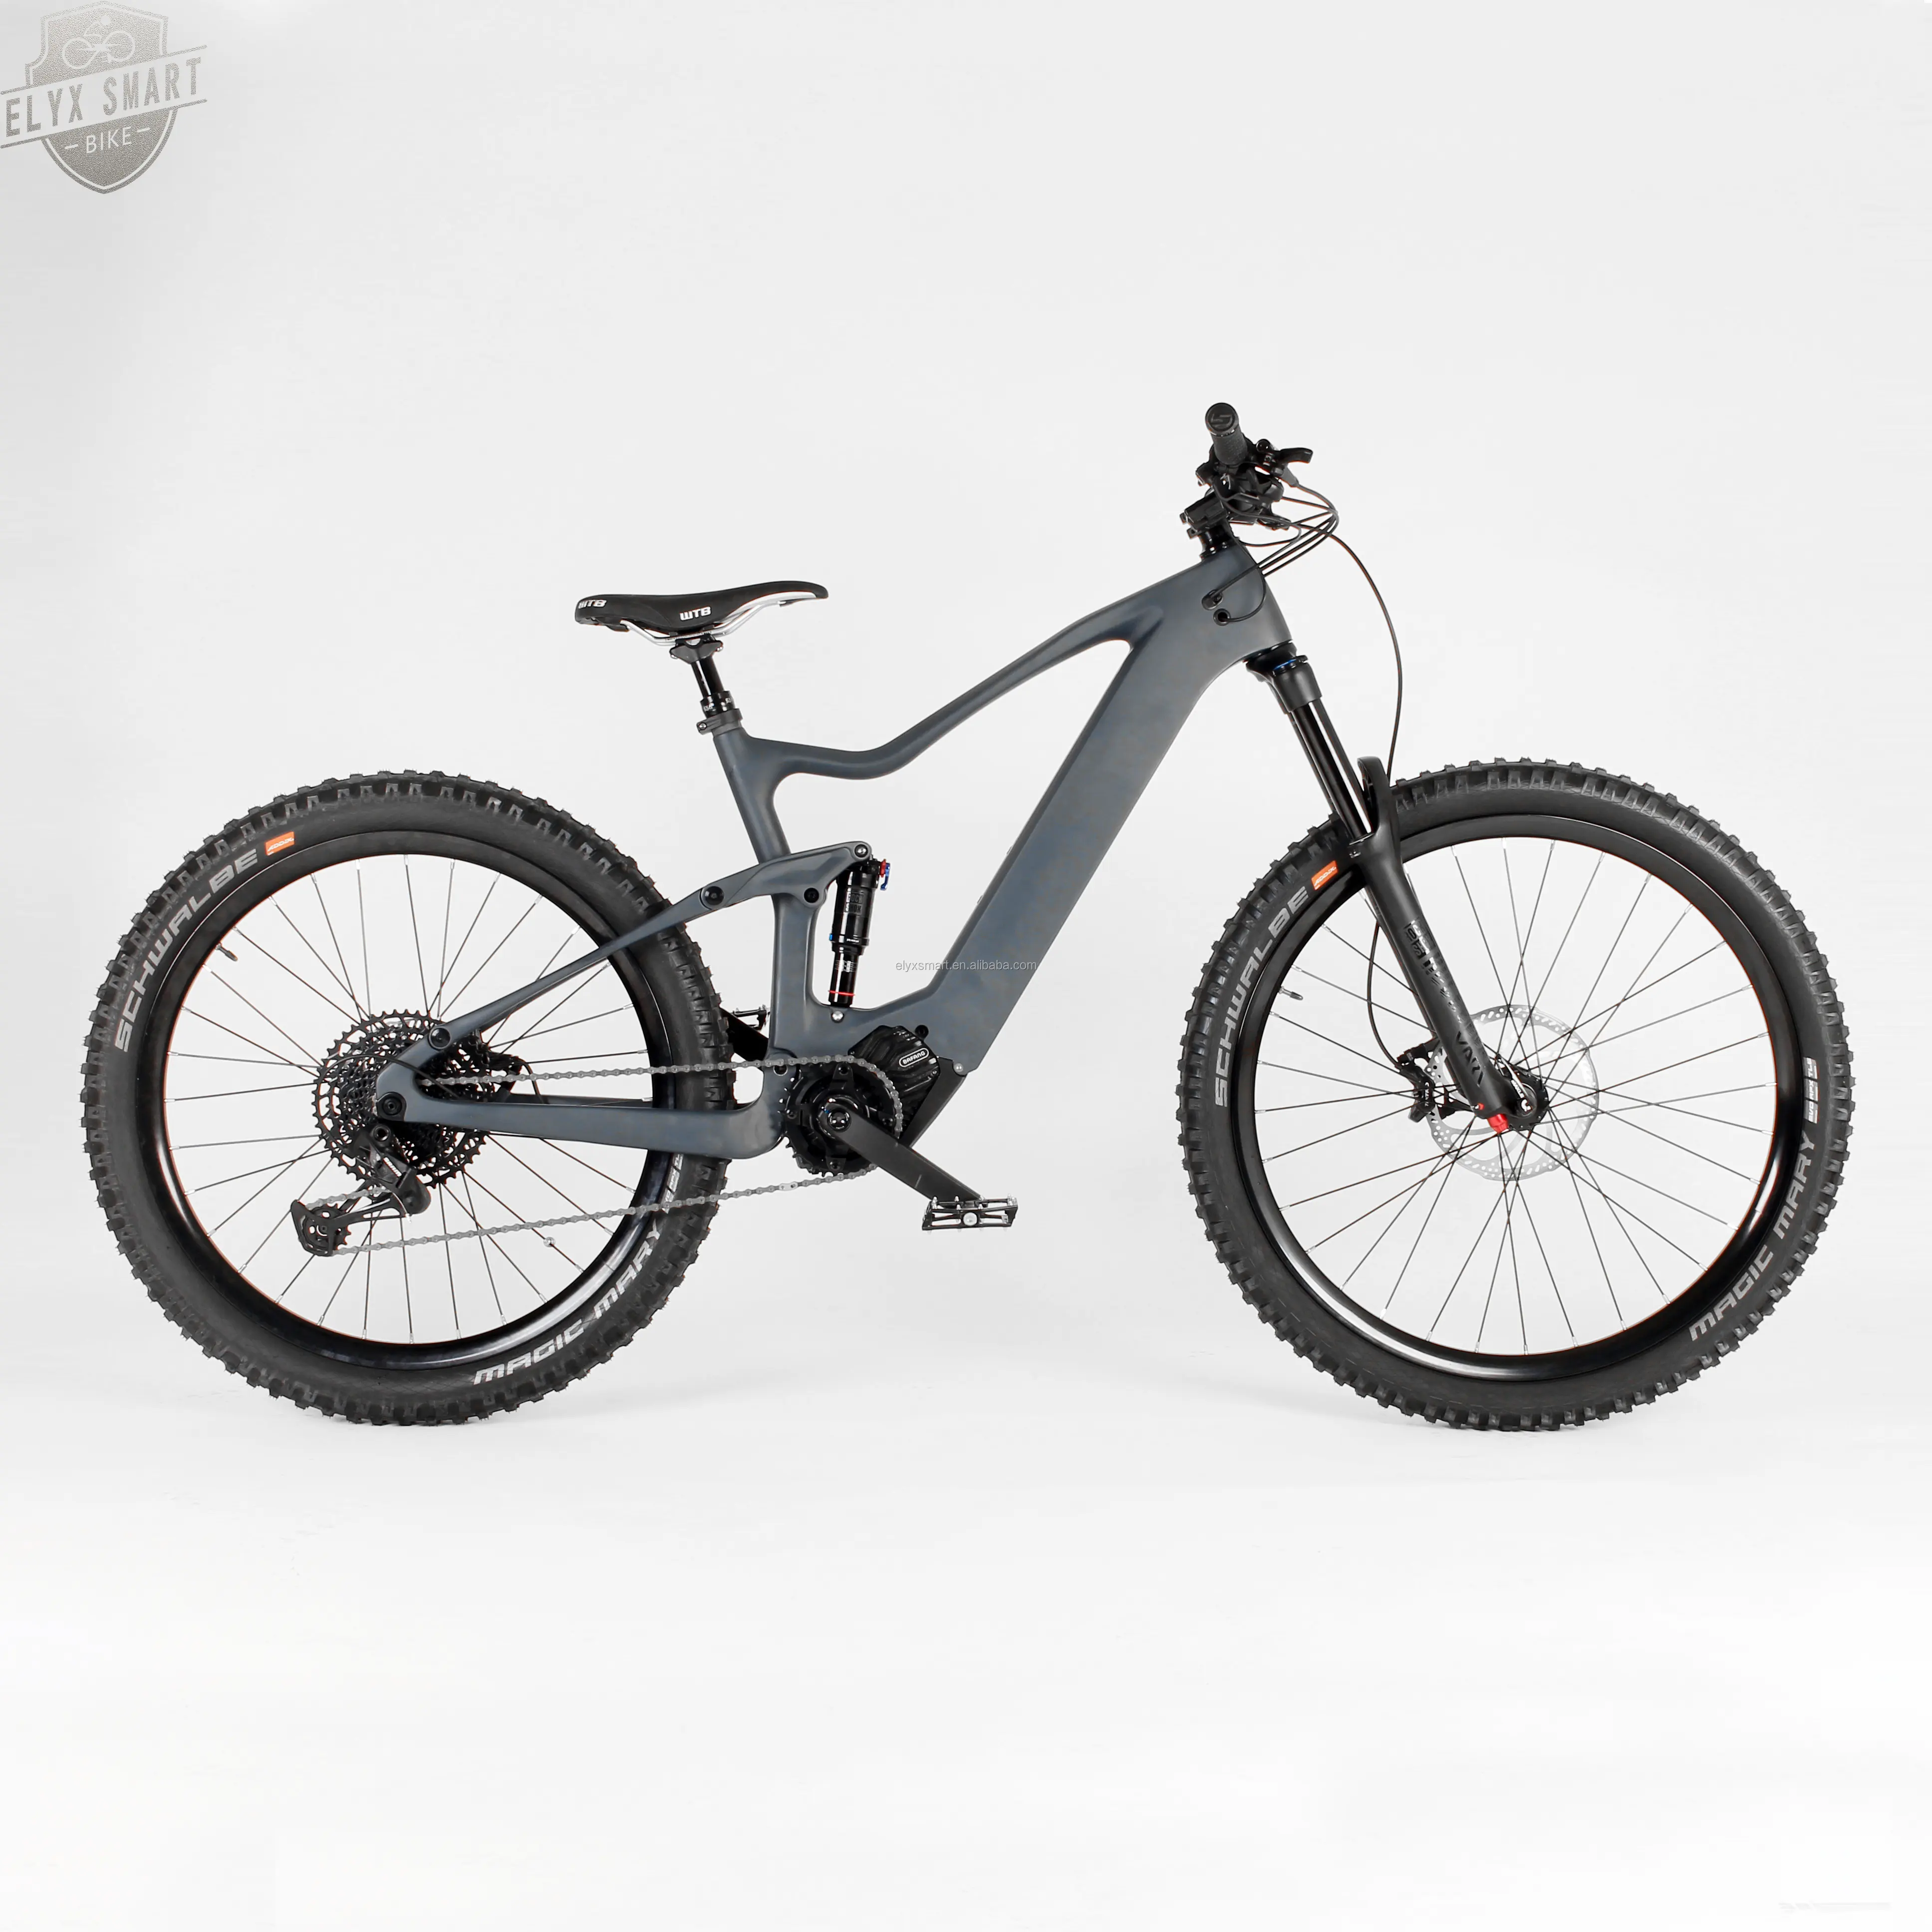 الدراجة الجبلية Rockshox من أفضل درجات الكربون دراجة جبلية 29er بنظام التعليق الكامل بسرعة 45 كم/ساعة دراجة جبلية كهربائية Bafang Mid Drive 500 وات